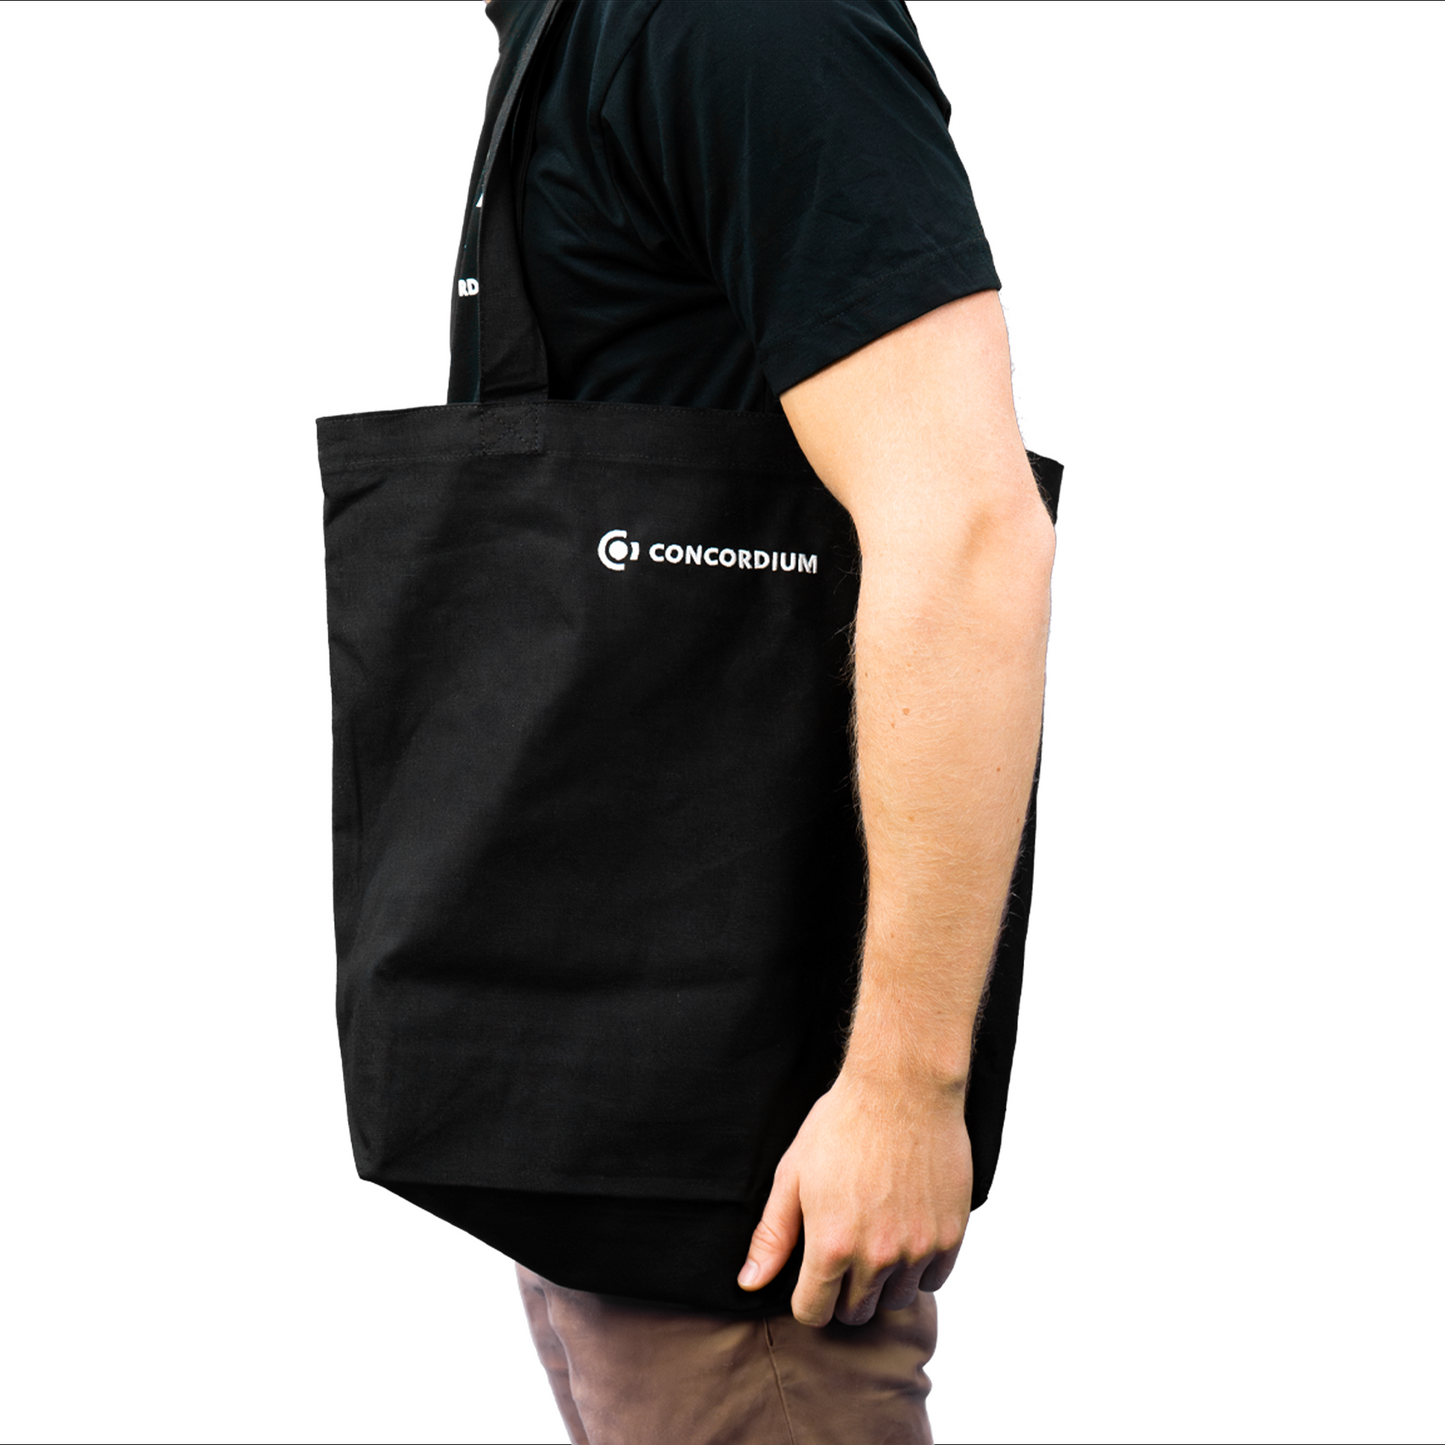 Concordium Branded Tote Bag